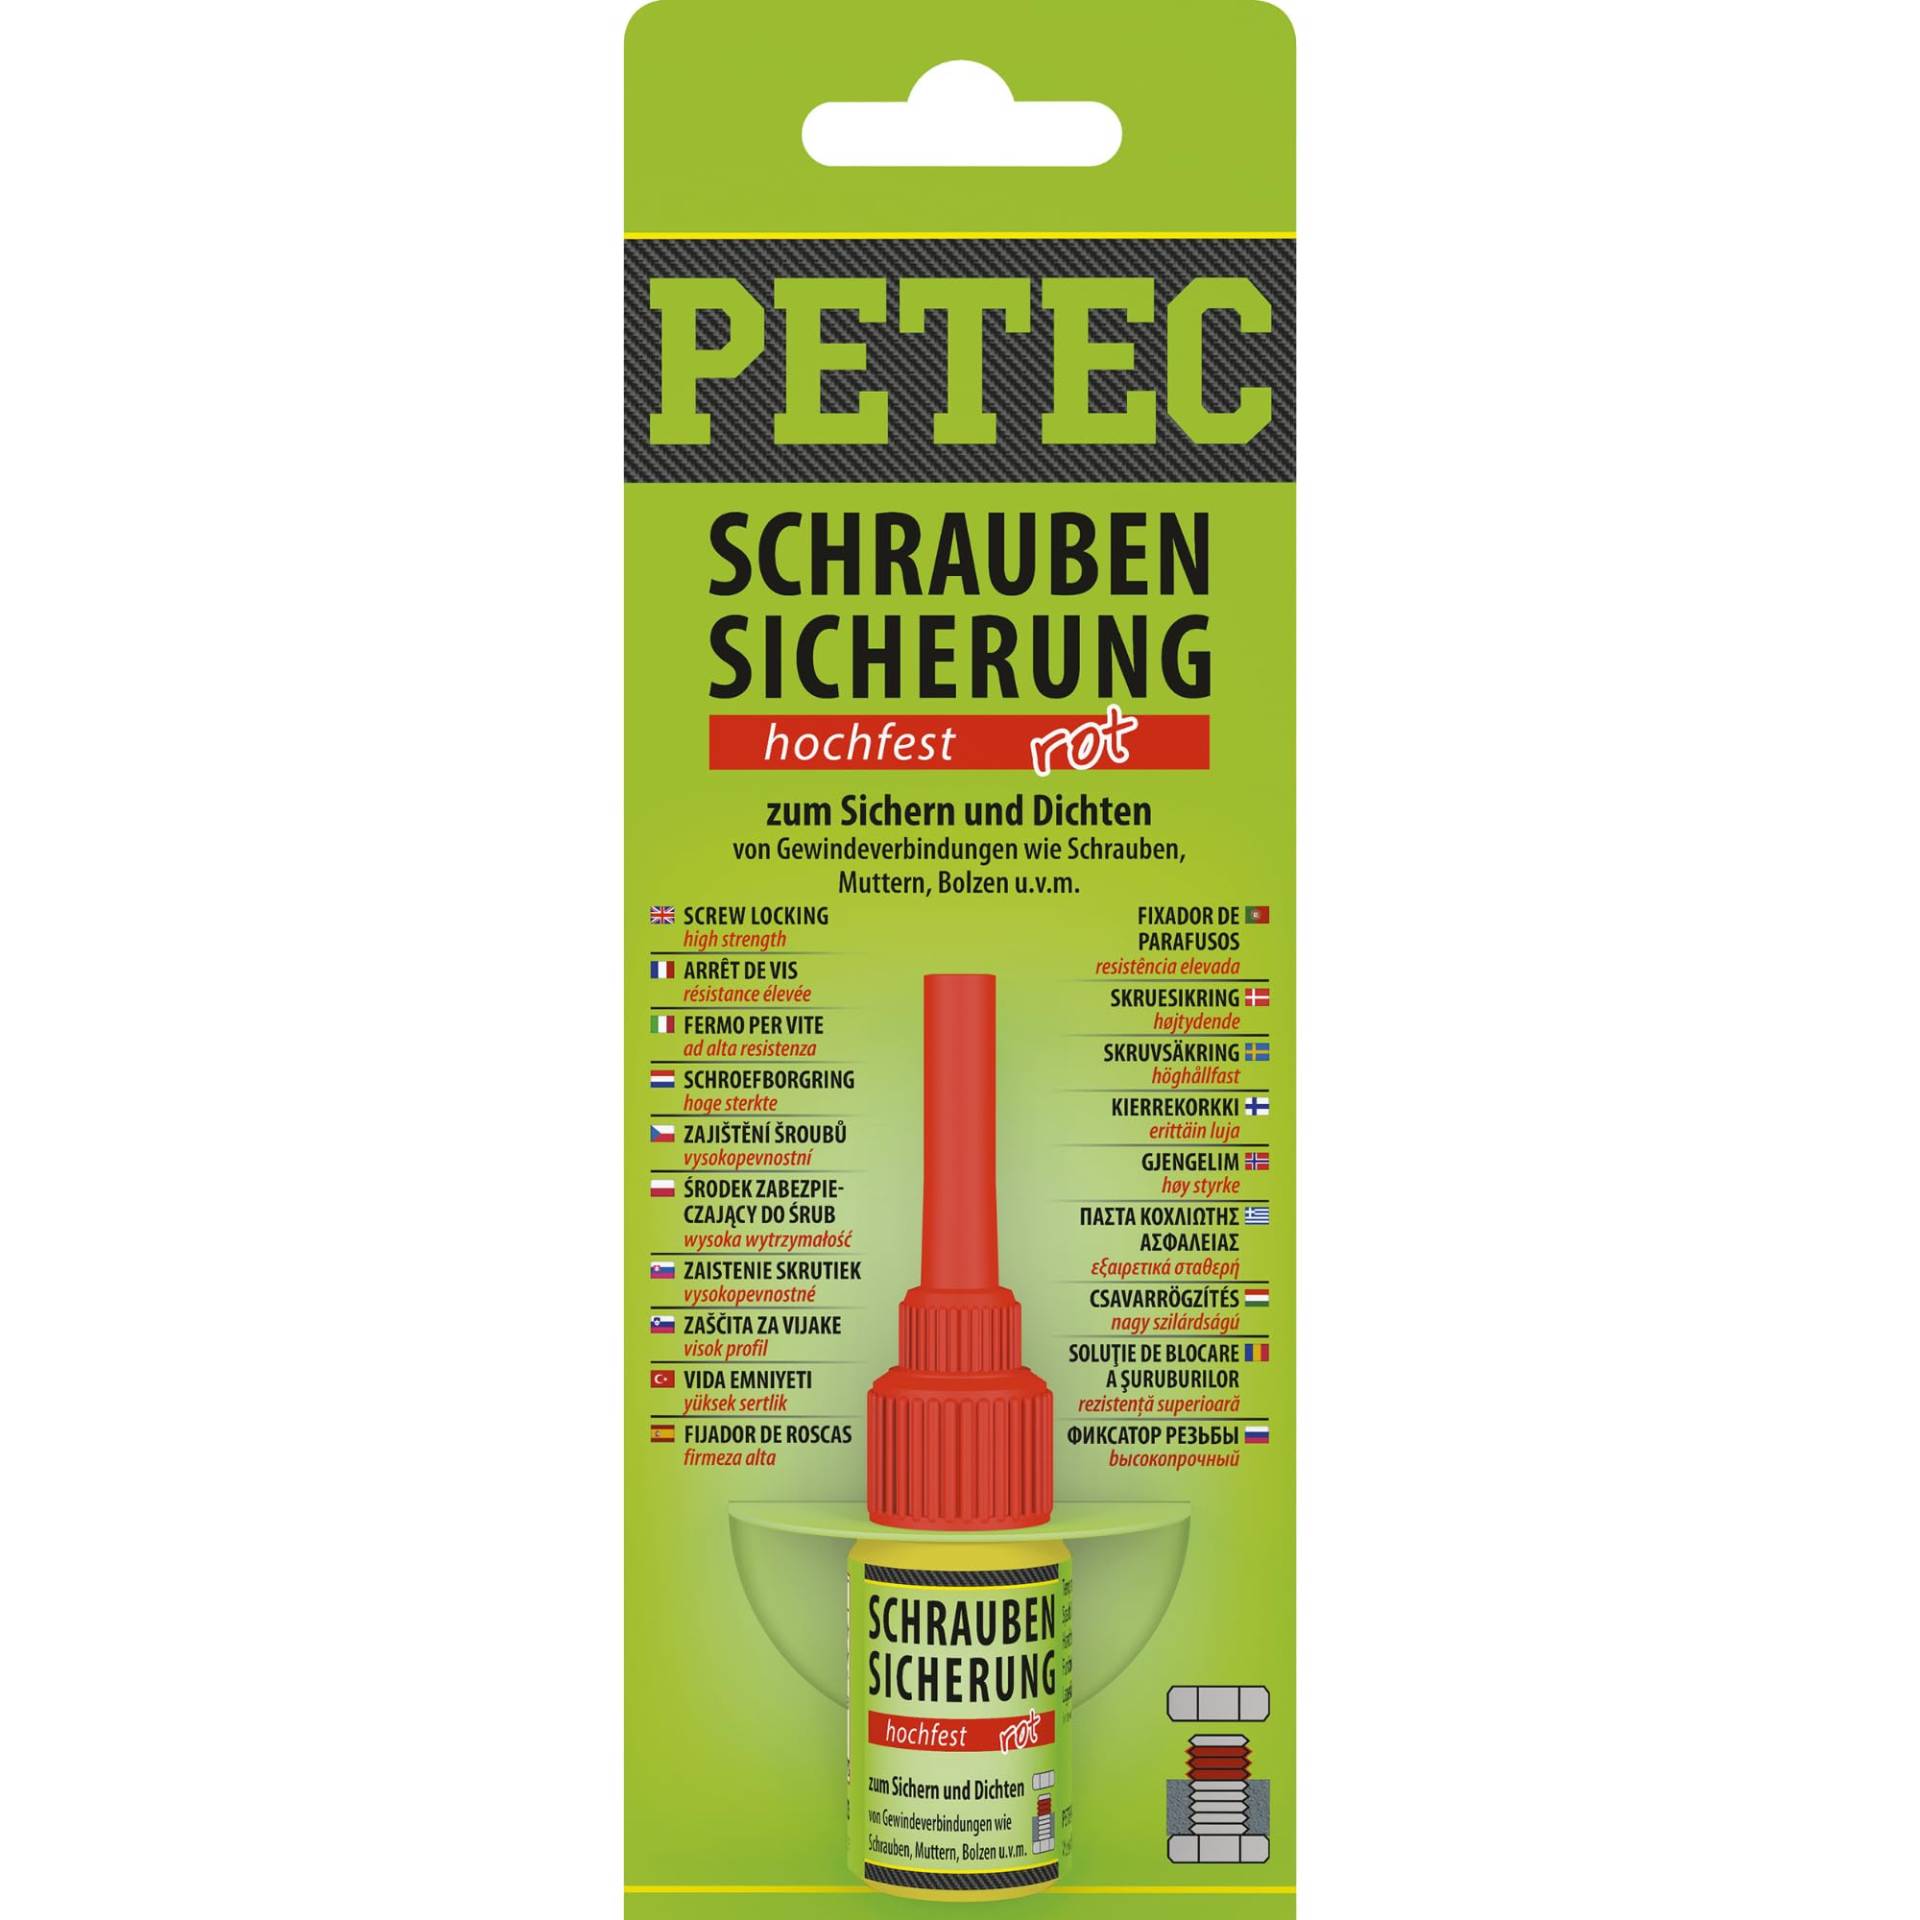 PETEC Schraubensicherung Hochfest rot 5g. Schrauben Kleber zum Sichern und Dichten. Starker Klebstoff Schraubenkleber für Muttern, Bolzen und Gewindegrößen bis M20. 92005 von PETEC